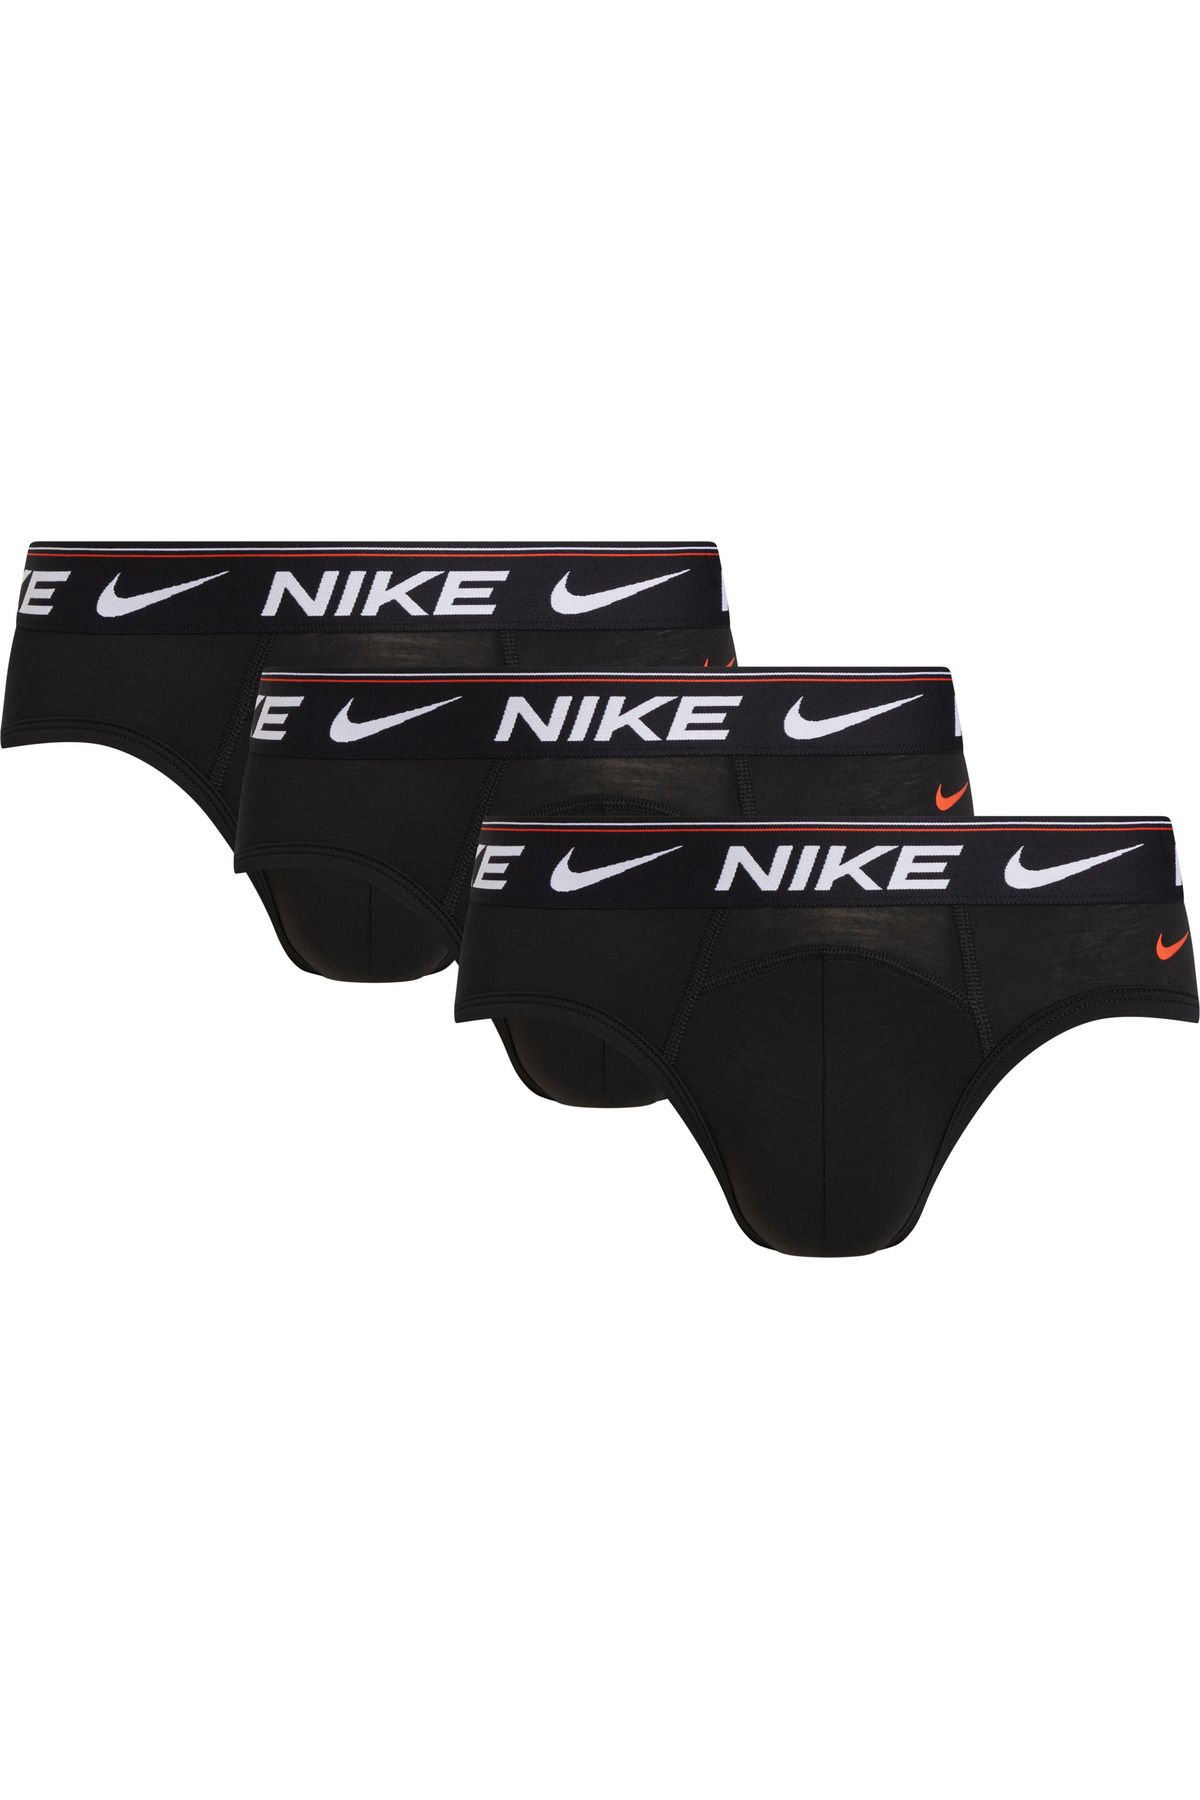 Nike Erkek Marka Logolu Elastik Bantlı Günlük Kullanıma Uygun Siyah Boxer 0000KE1260-KP3